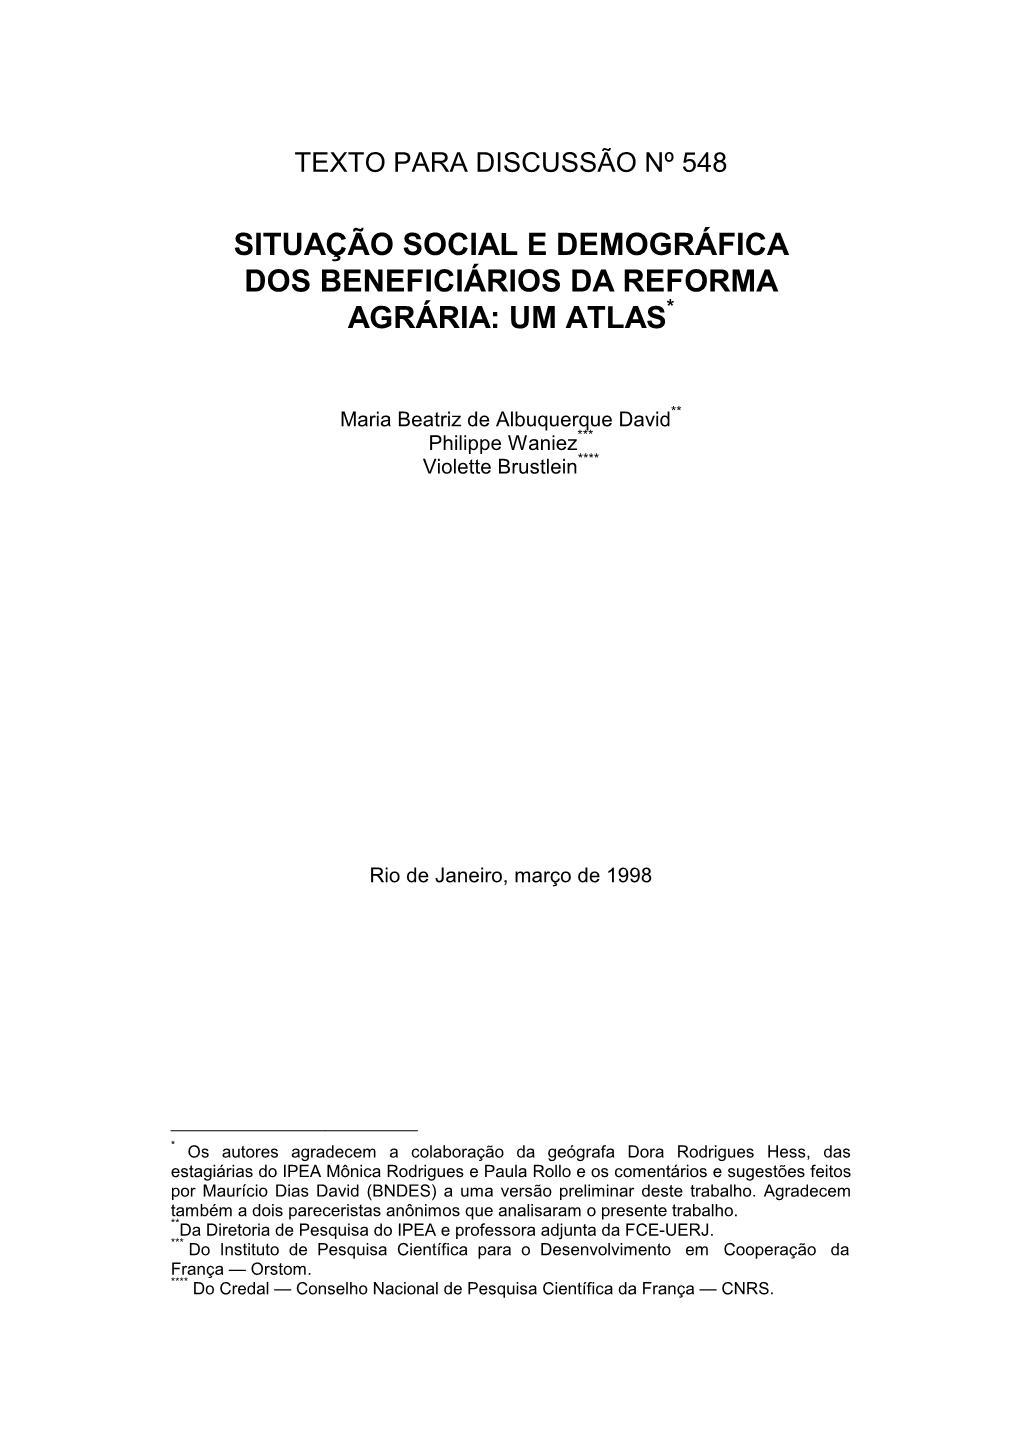 Situação Social E Demográfica Dos Beneficiários Da Reforma Agrária: Um Atlas*